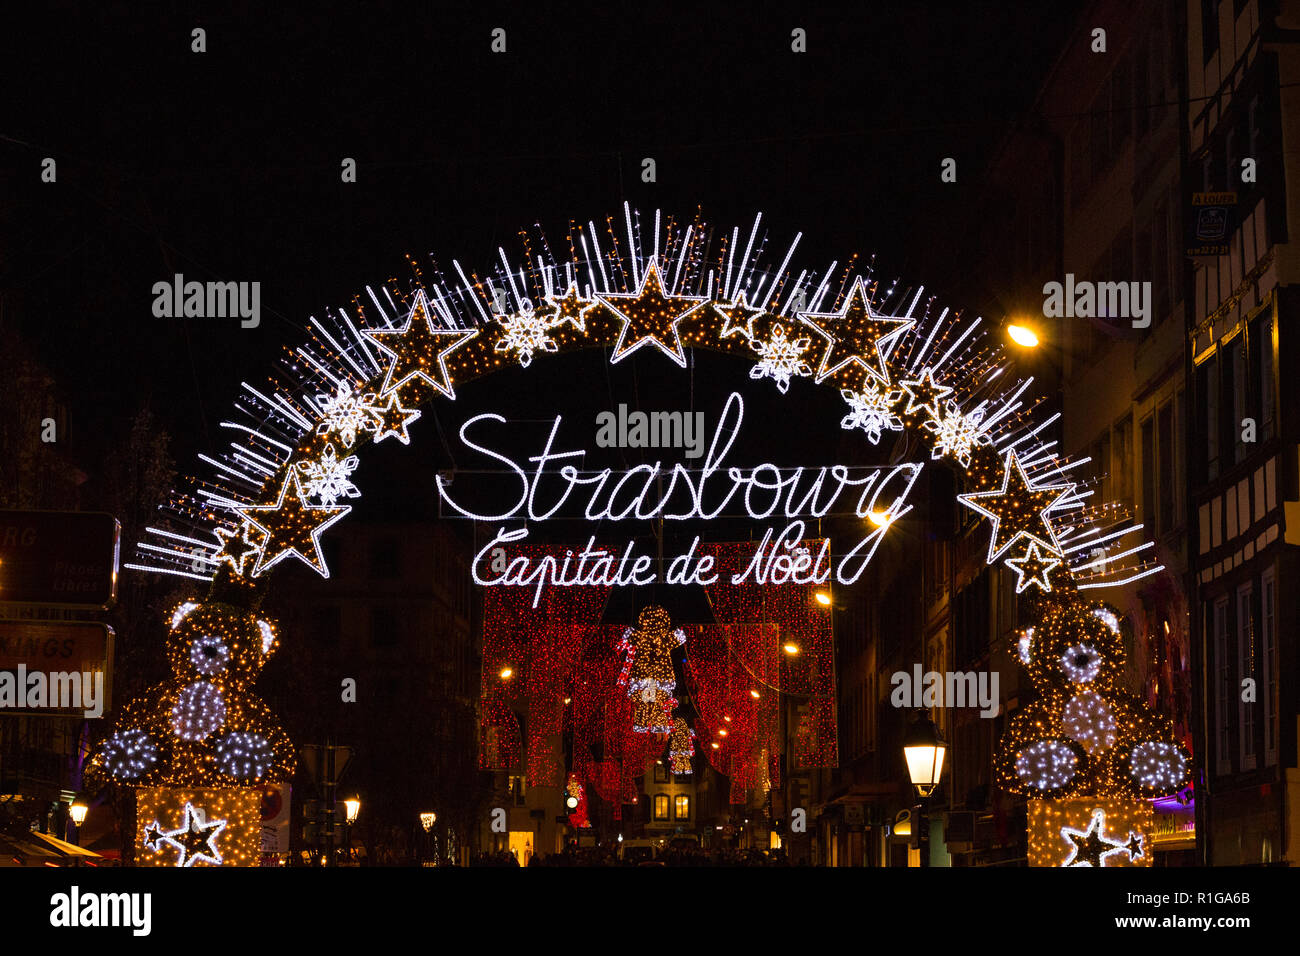 Passage lumineux disant "Strasbourg, capitale de Noël" à l'entrée du marché de Noël centre ville de Banque D'Images